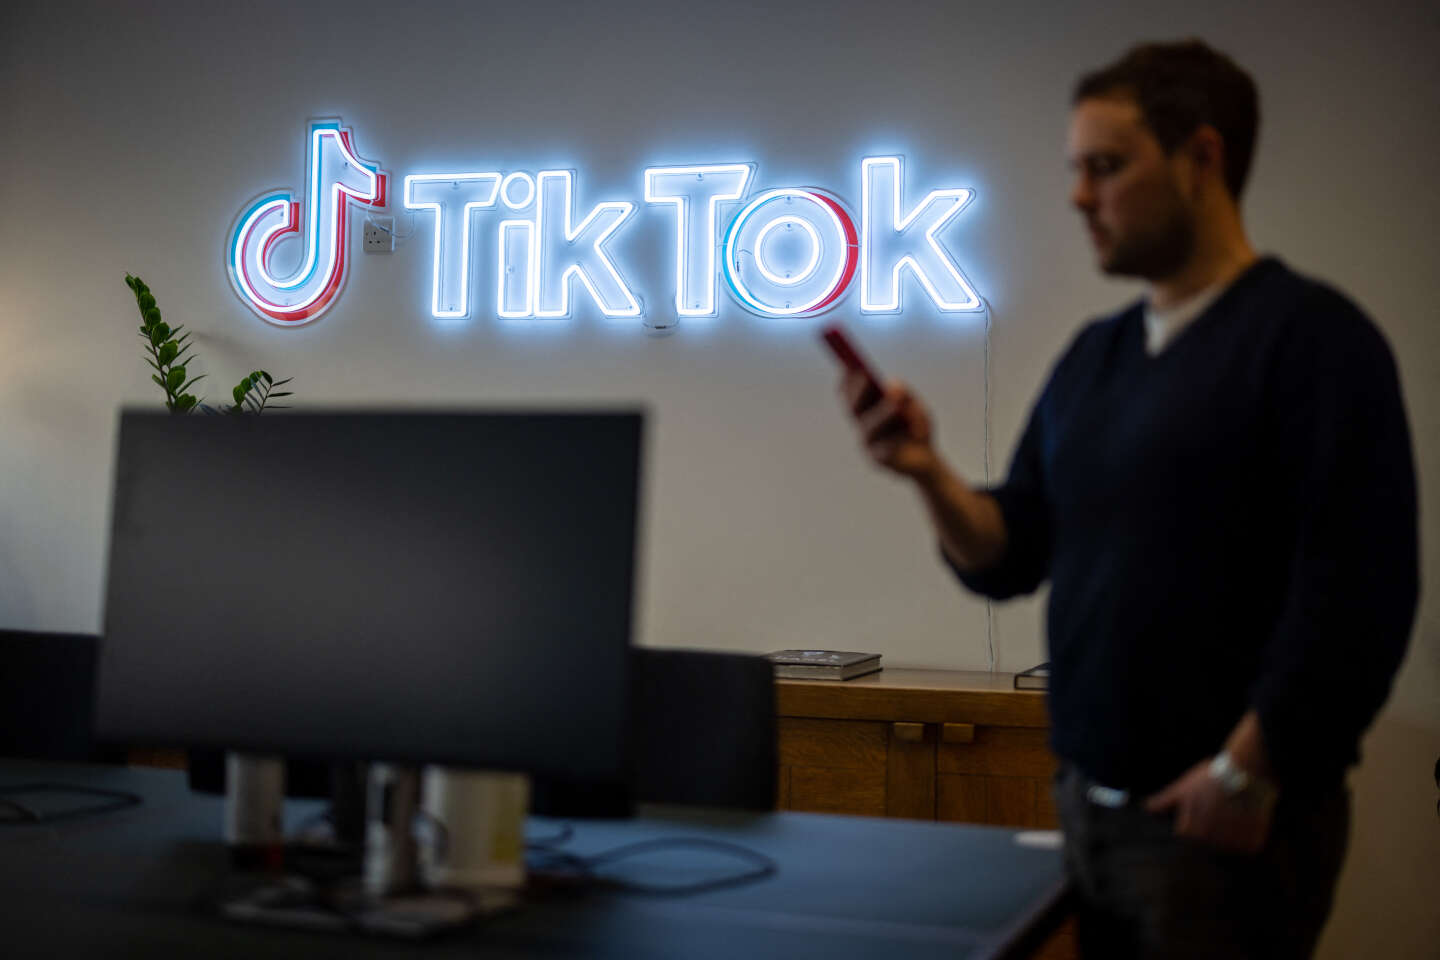 Shorts vs. TikTok: How Google is Taking on ByteDance's